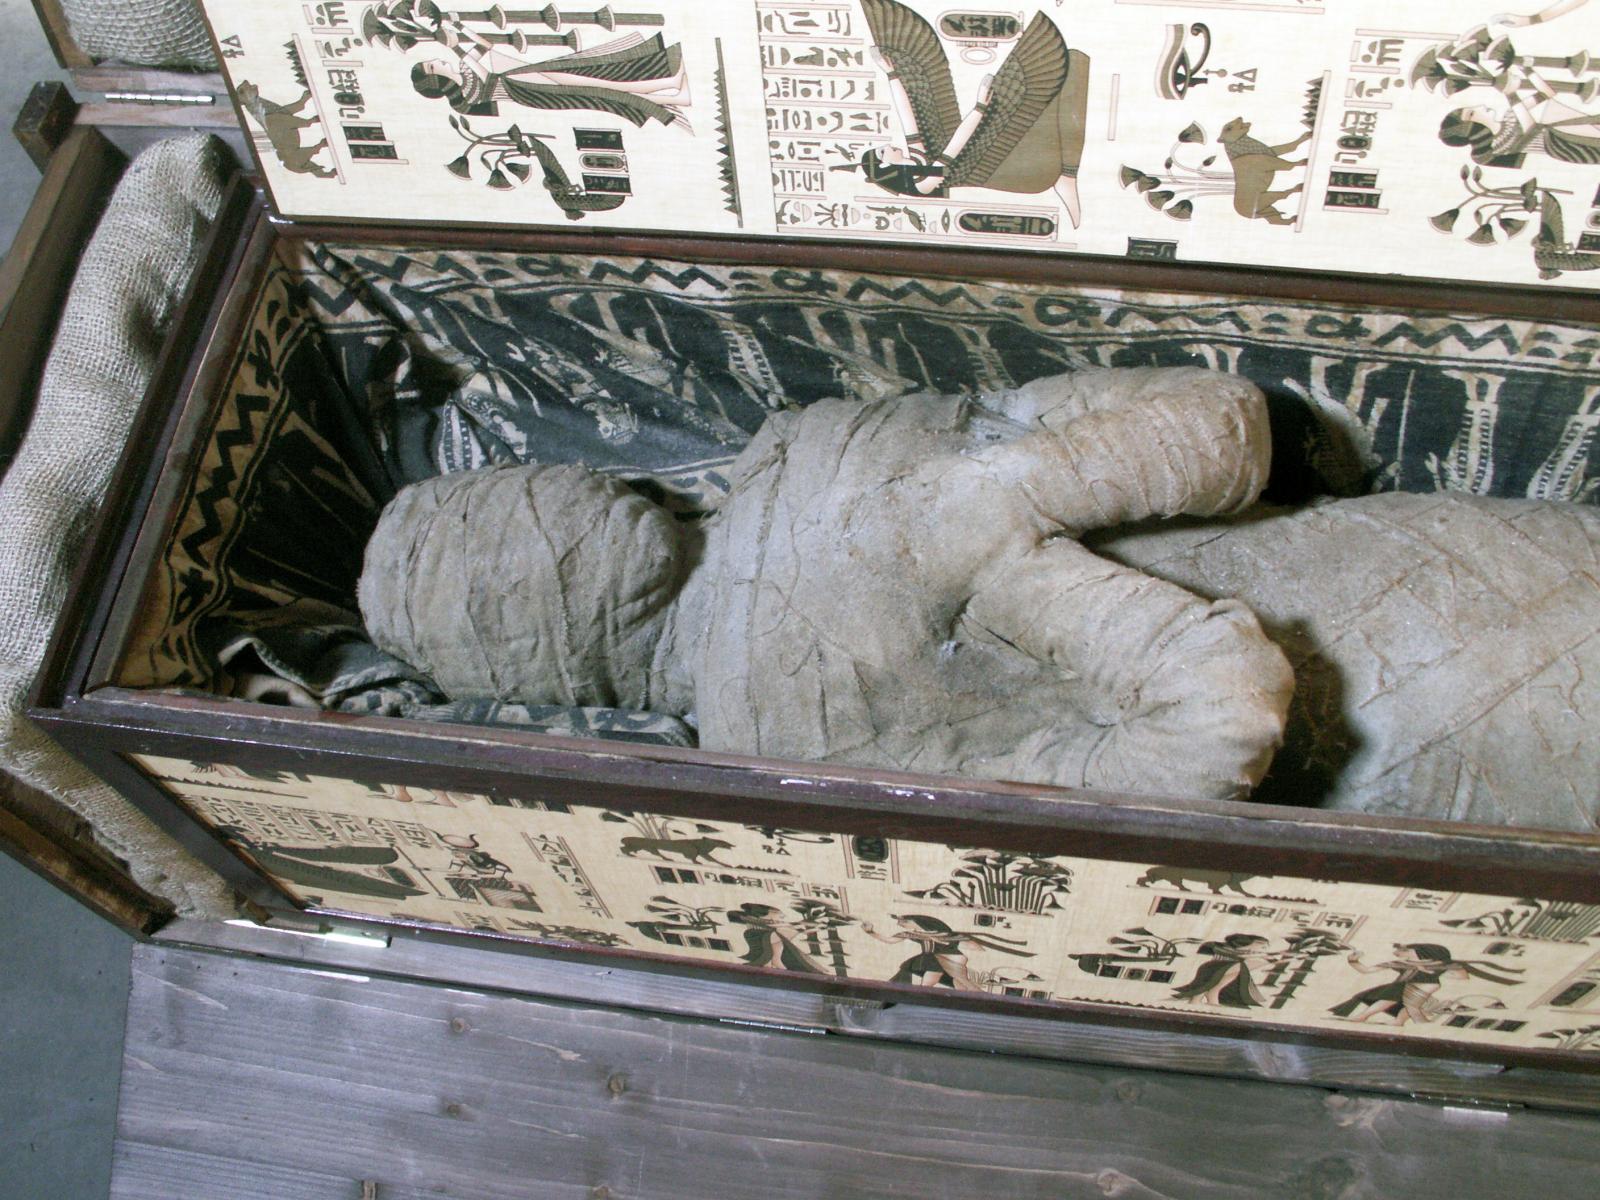 Руководство по изготовлению мумии: технологии мумификации Древнего Египта и наших дней